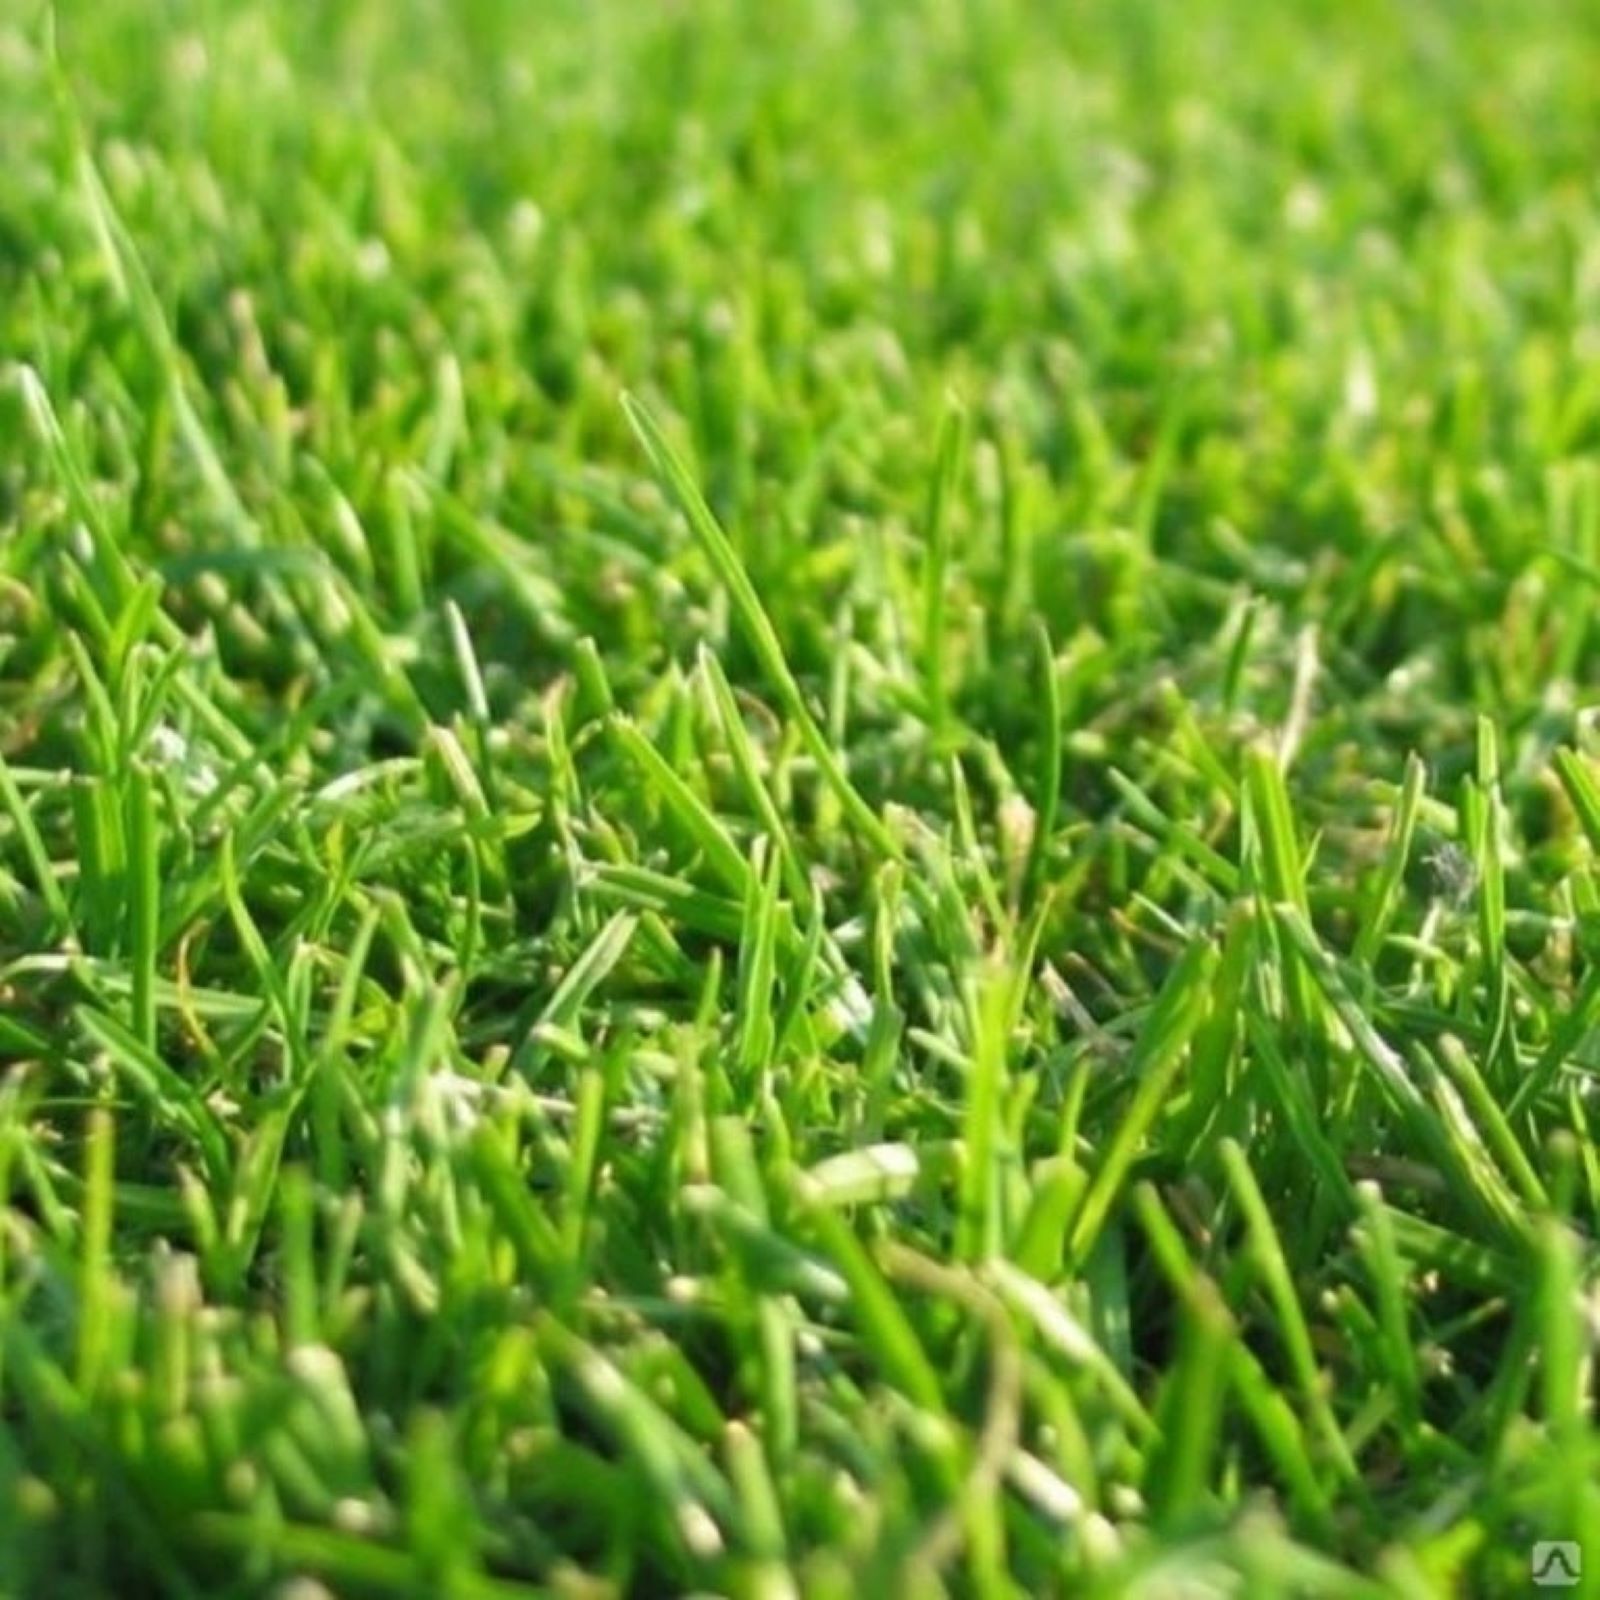 Семена травы для стадионов